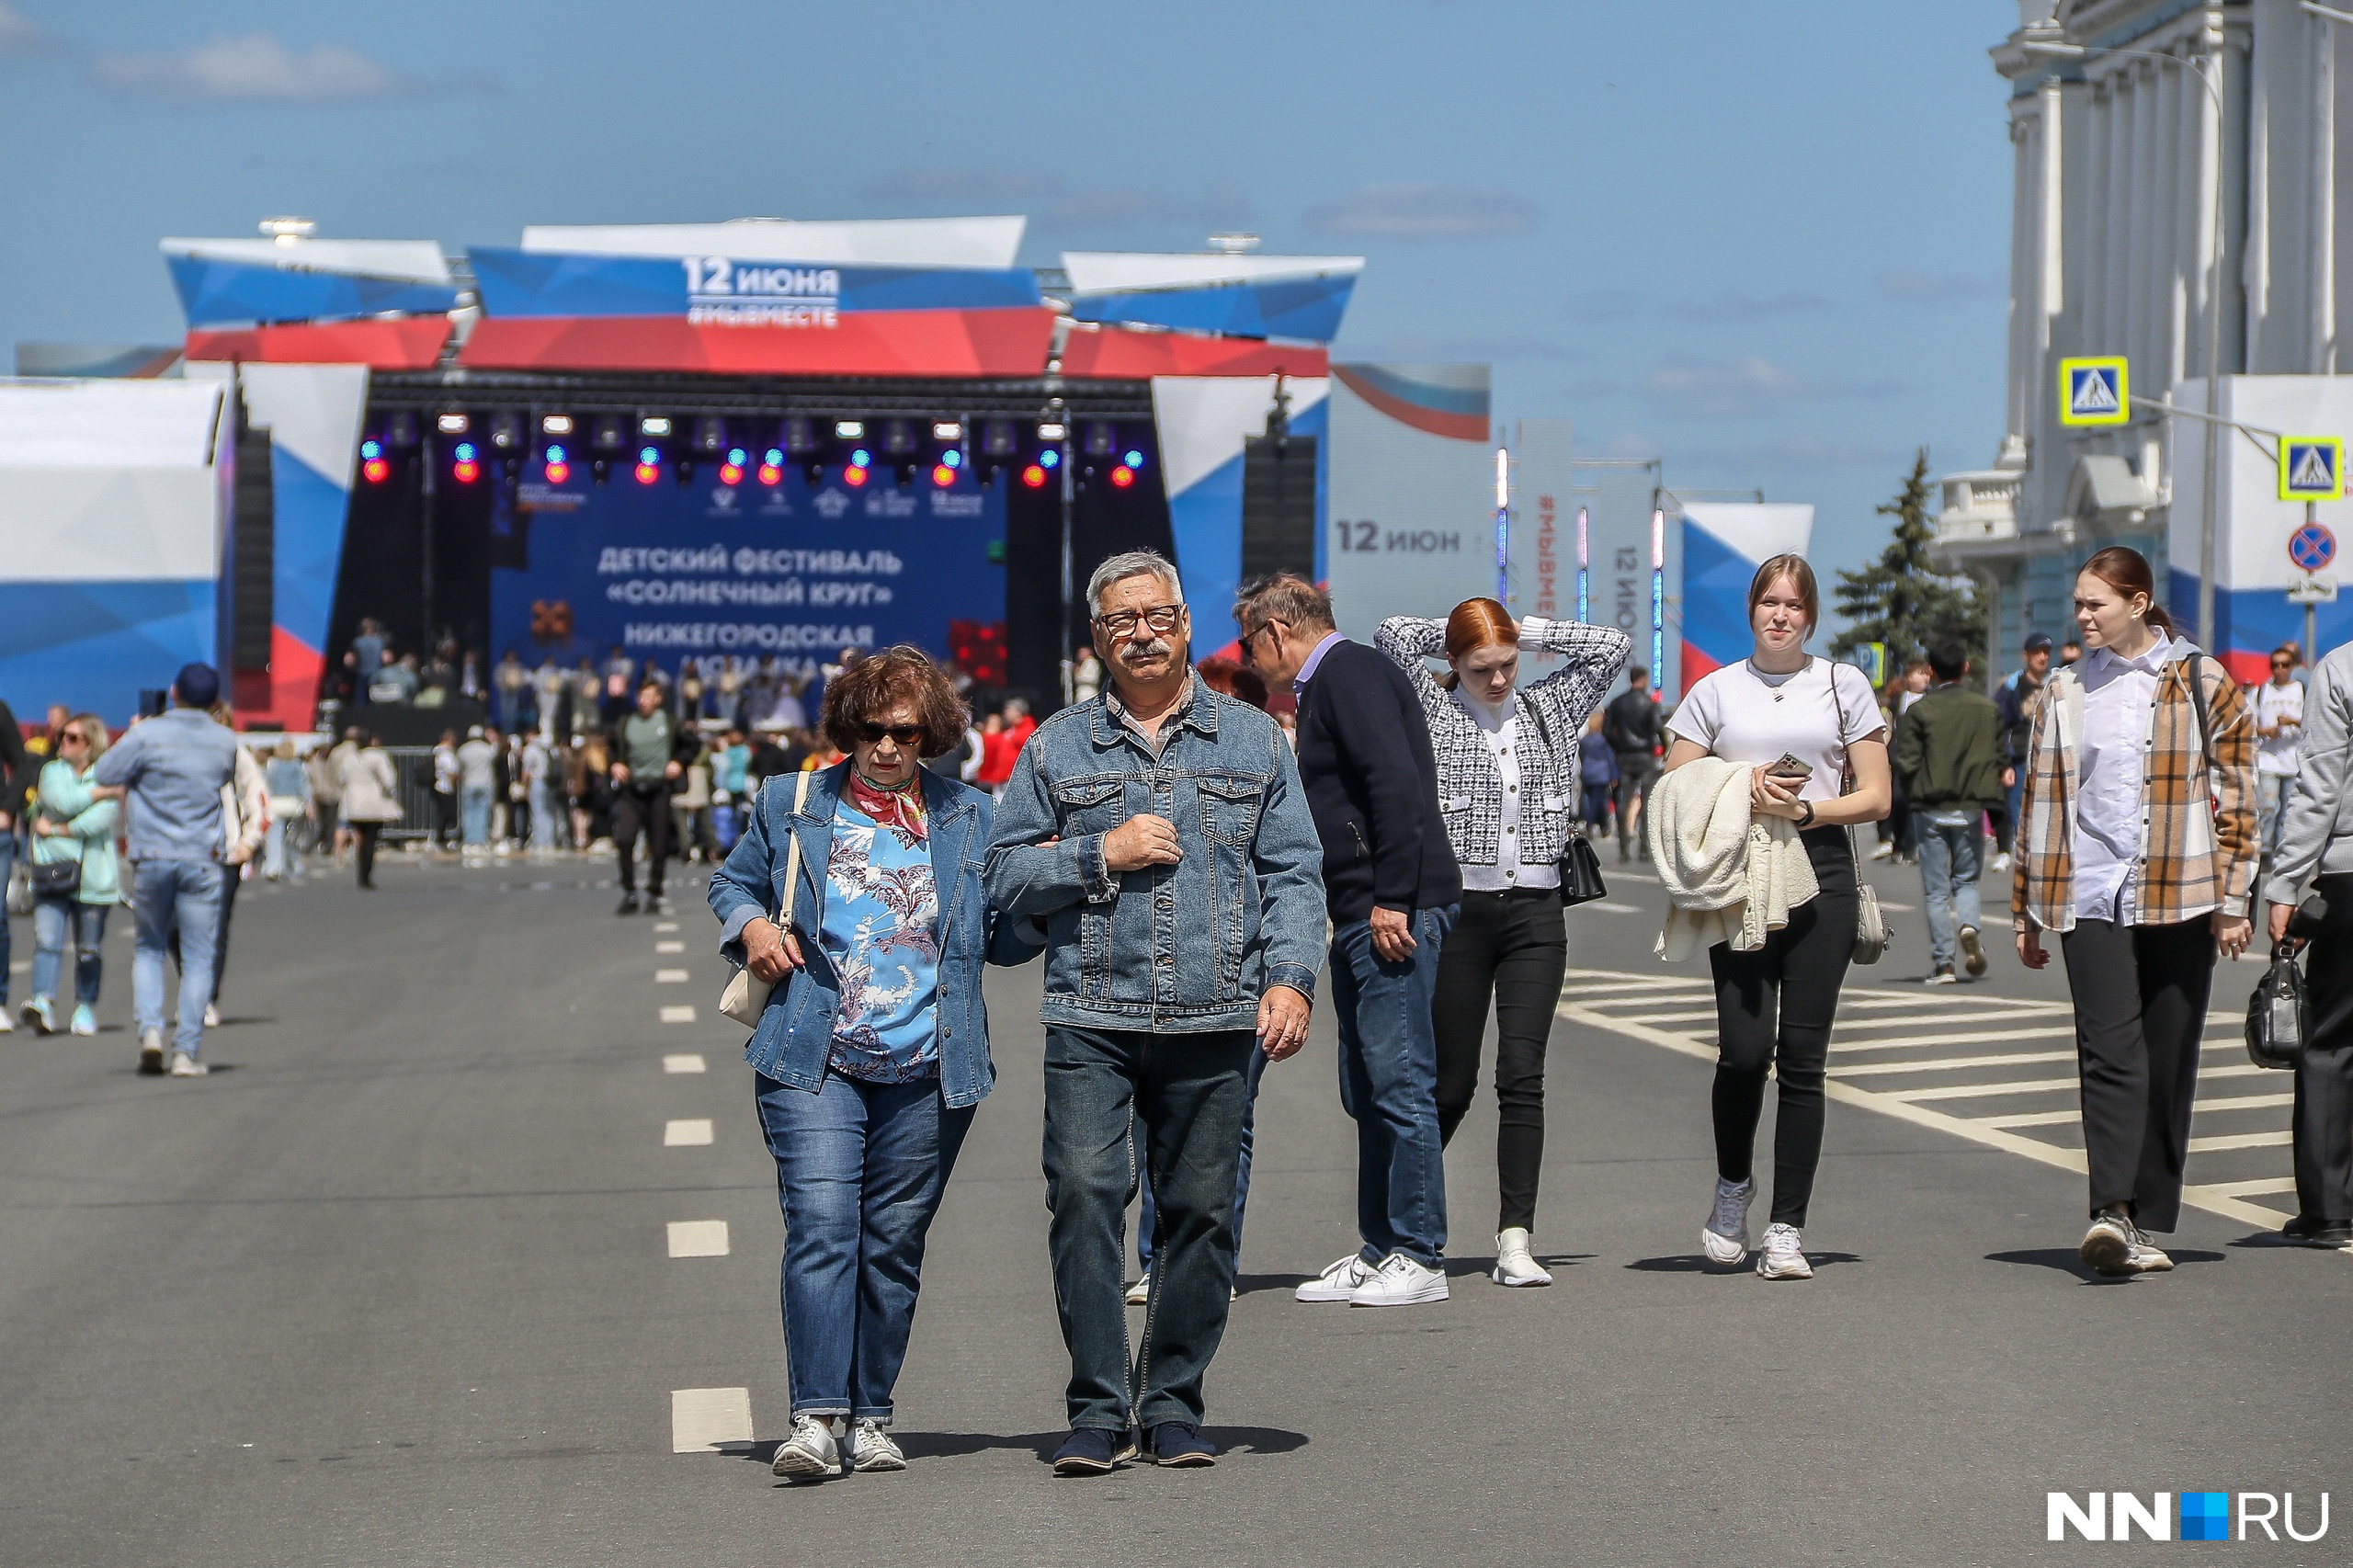 Очередь за чебуреками, ретроавтомобили и концерты: как отмечают День России в Нижнем Новгороде